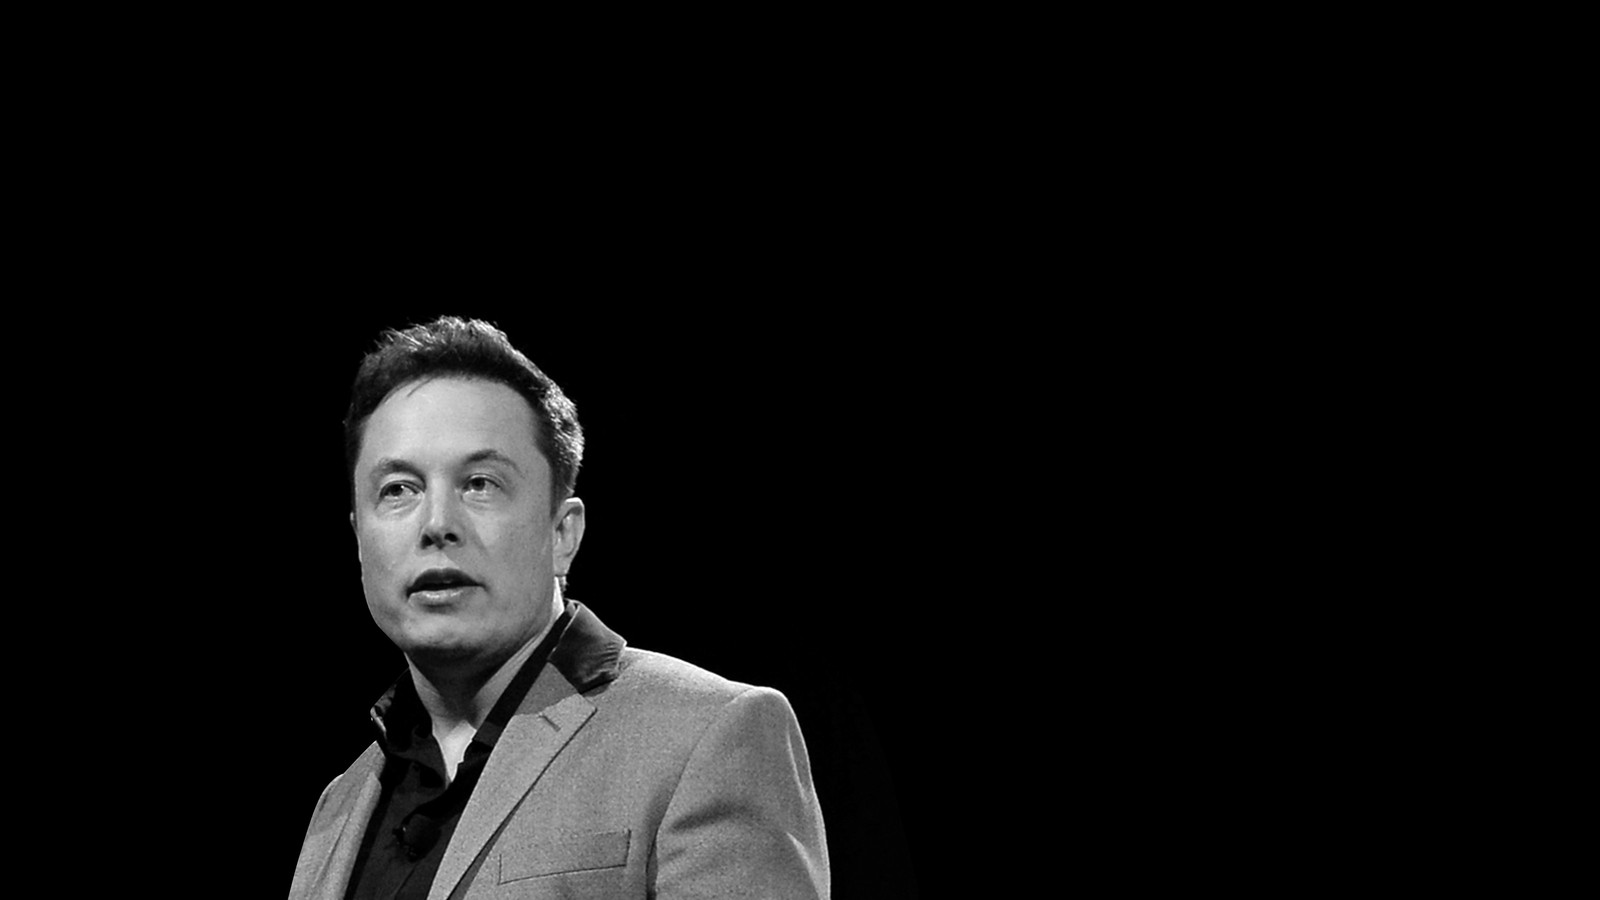 Elon Musk's Brutally Honest Management Style - The Atlantic